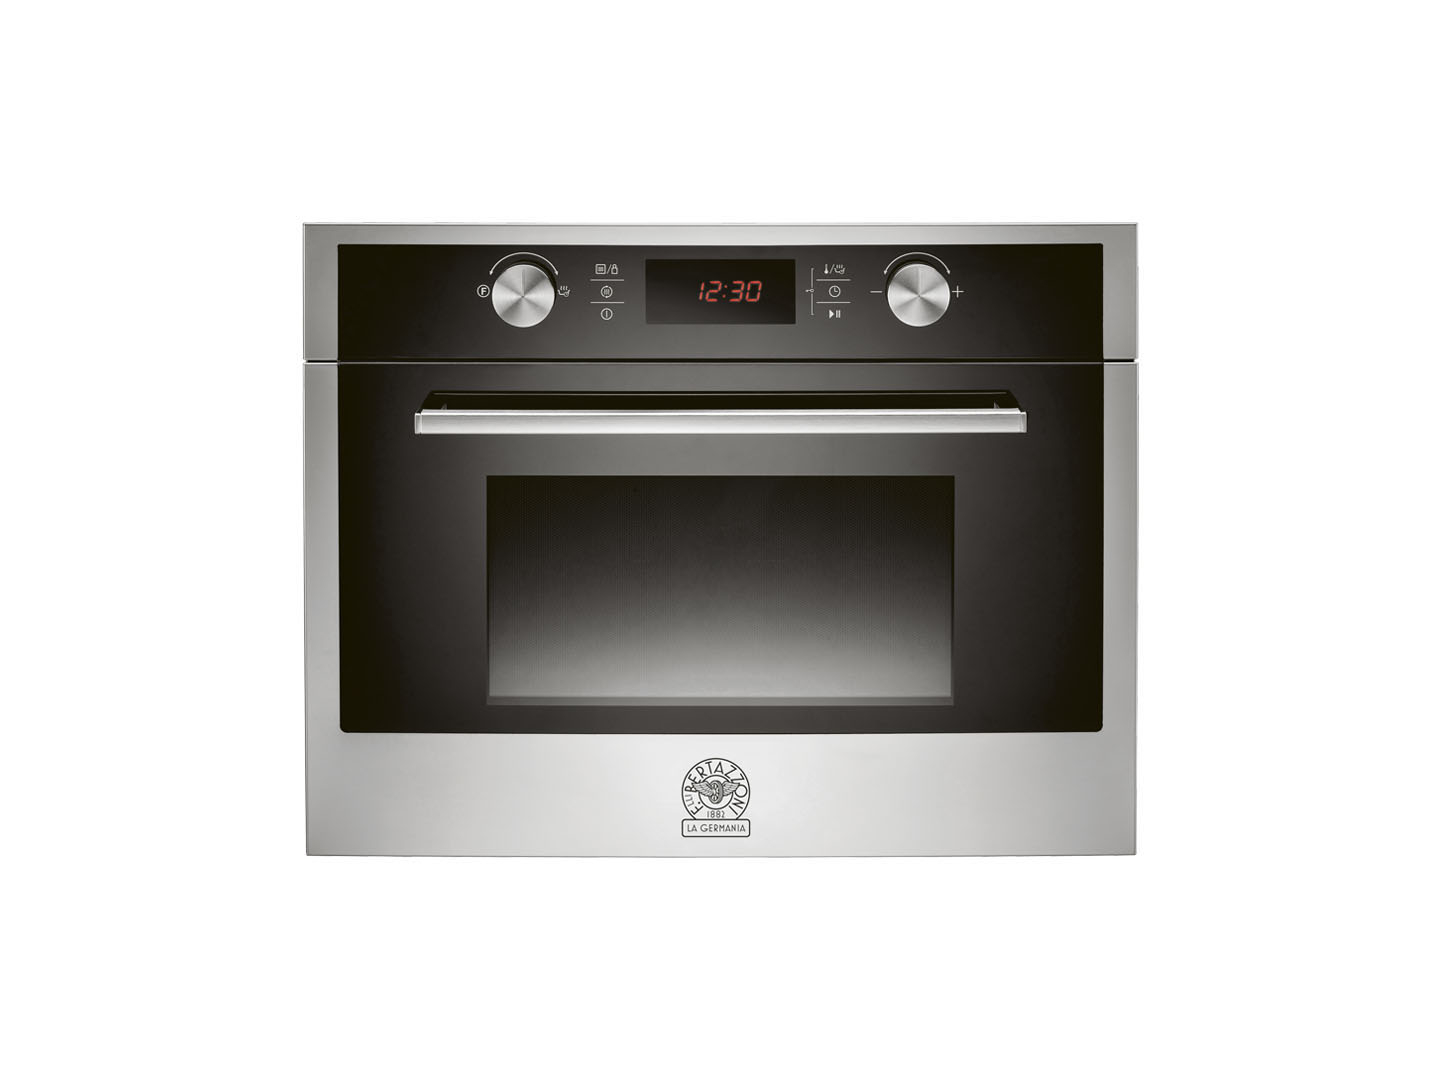 60 Combi-Microwave Oven | Bertazzoni La Germania - Stainless